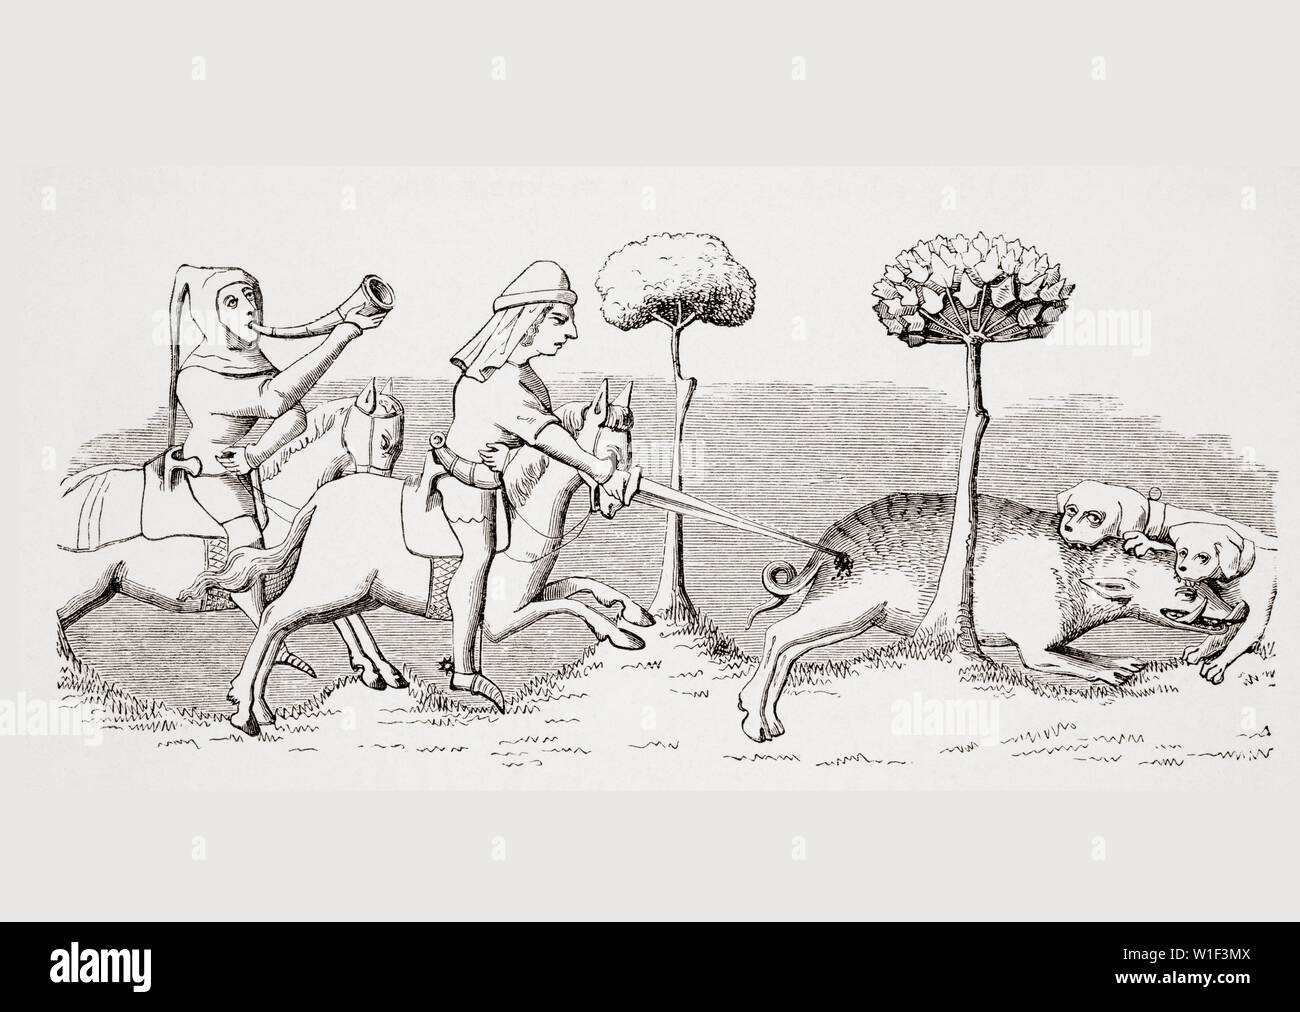 Le sport avec les chiens. Comment le sanglier est chassé au moyen de chiens. 19e siècle reproduction d'une miniature dans un manuscrit du 14ème siècle Livre du Roy Modus. Banque D'Images